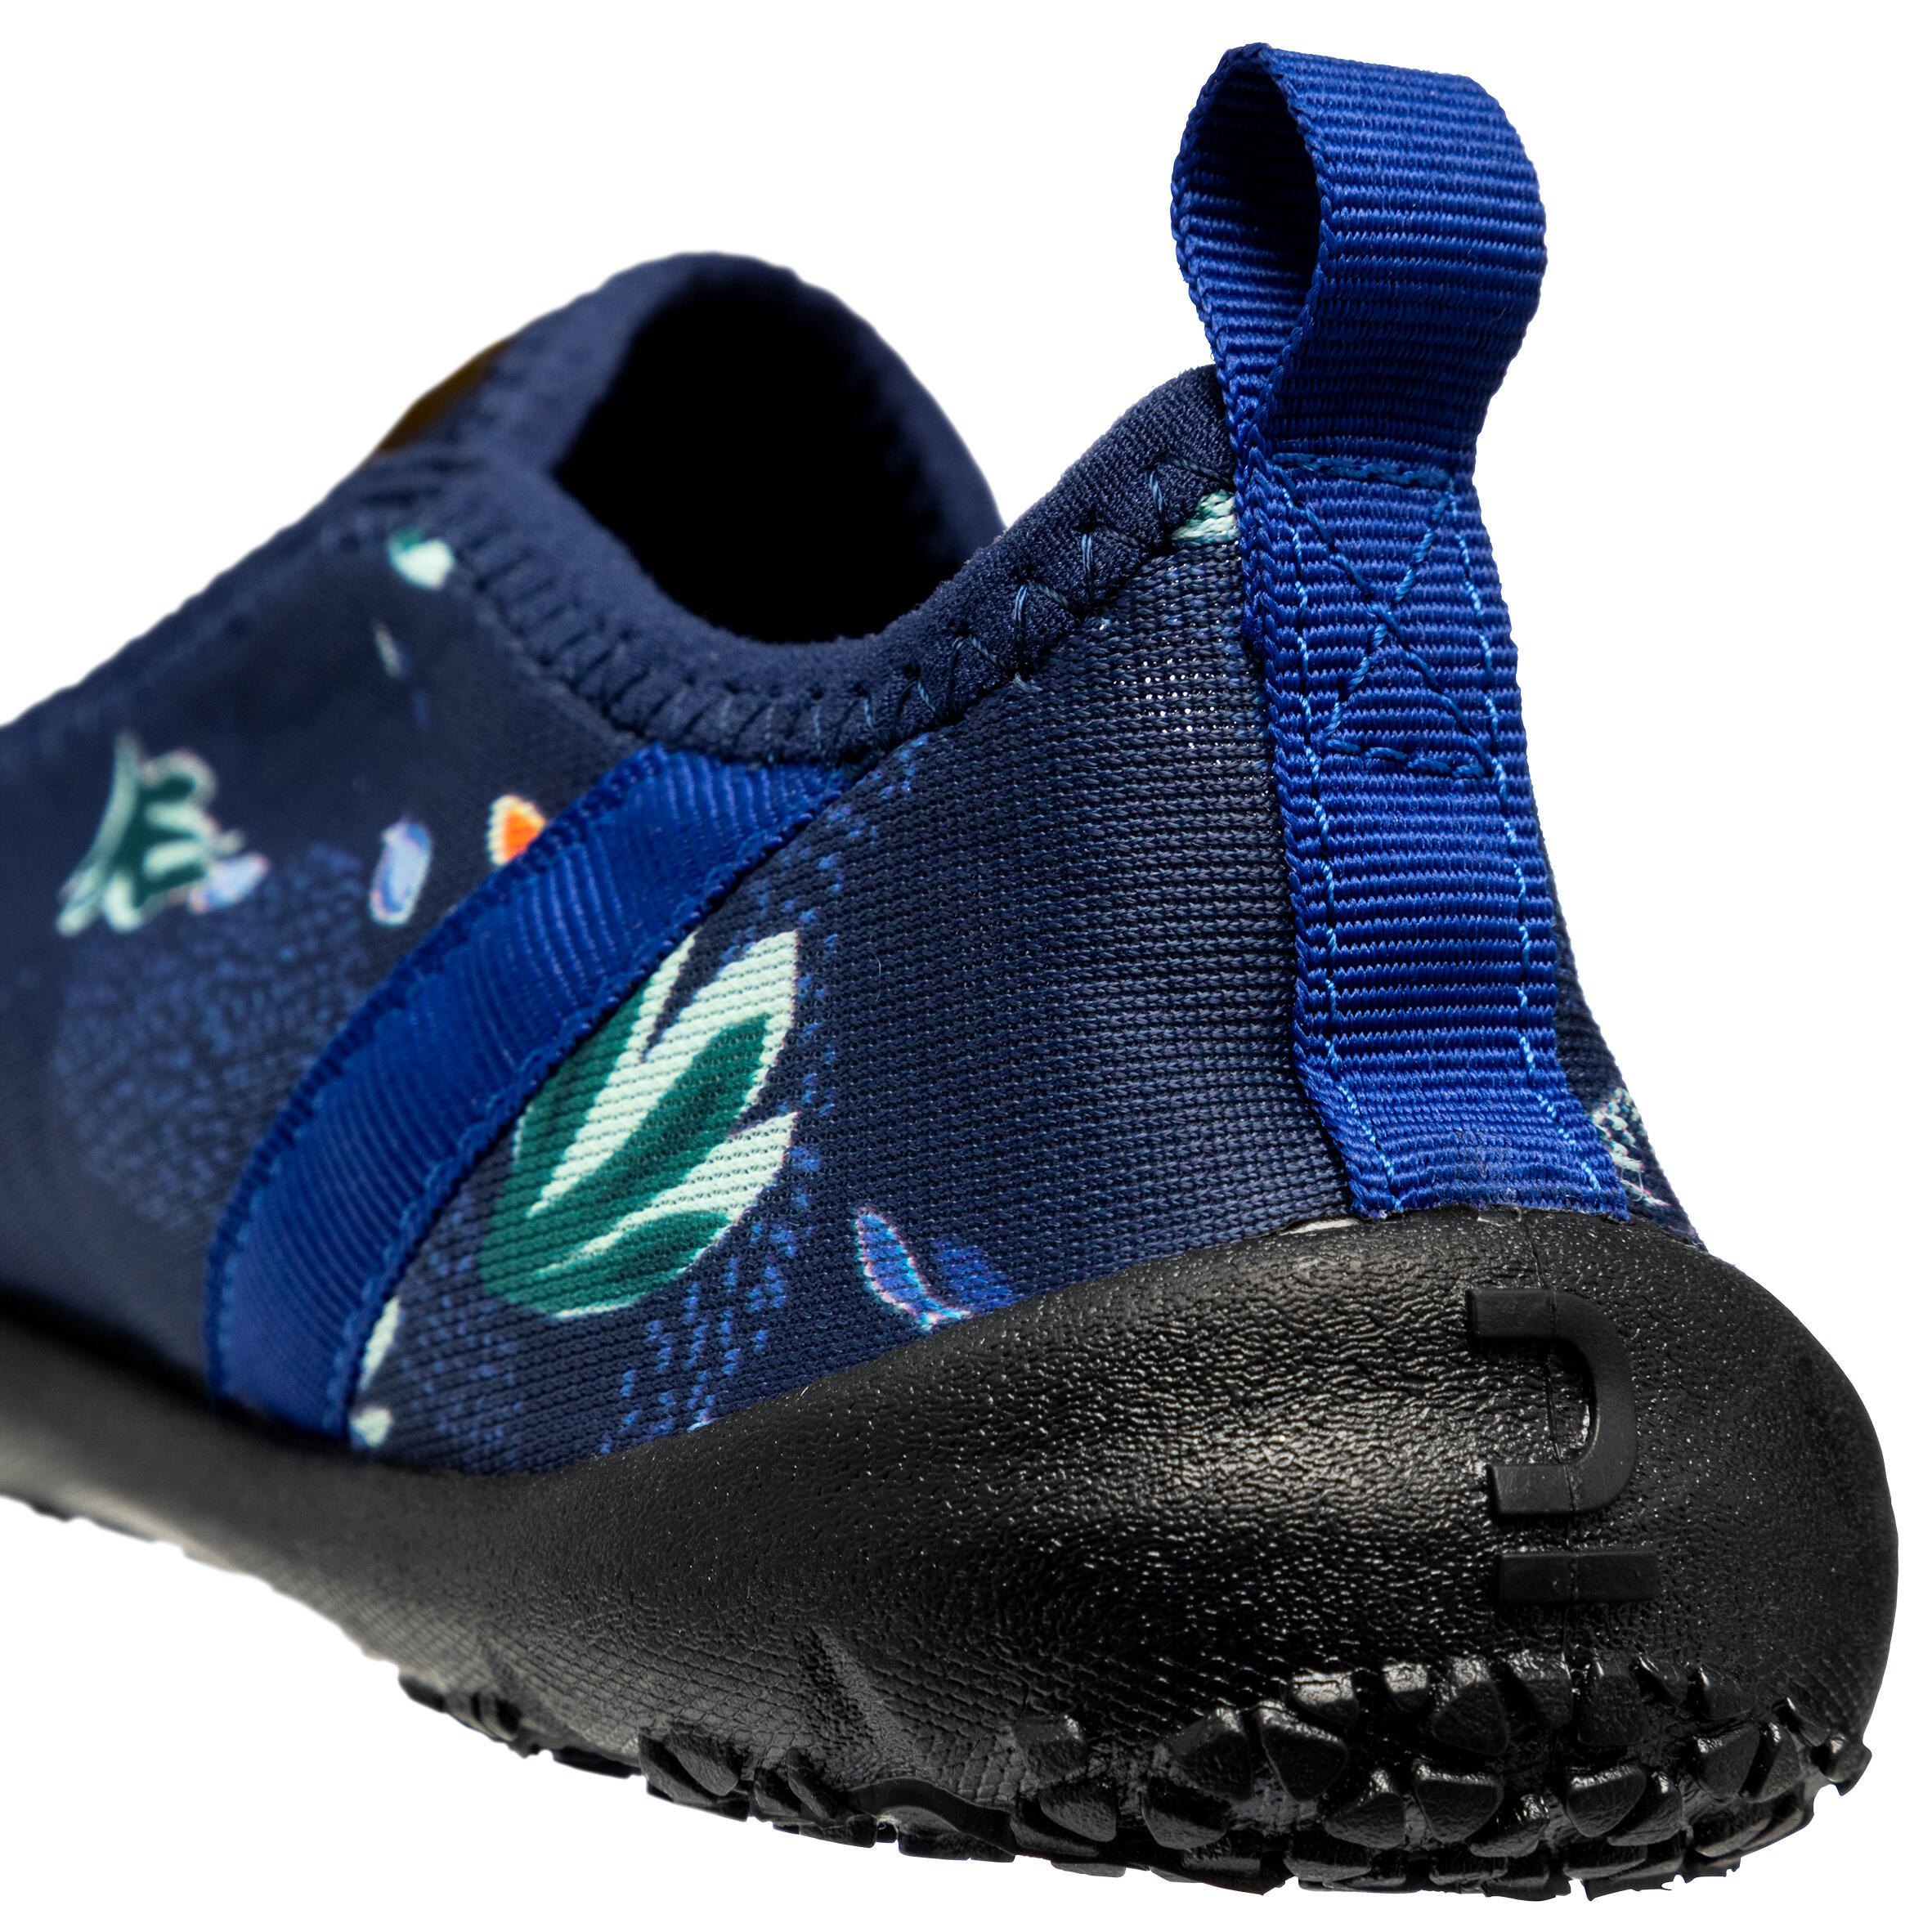 Adults elasticated aquashoes - Aquashoes 120 med sea black soles 5/6